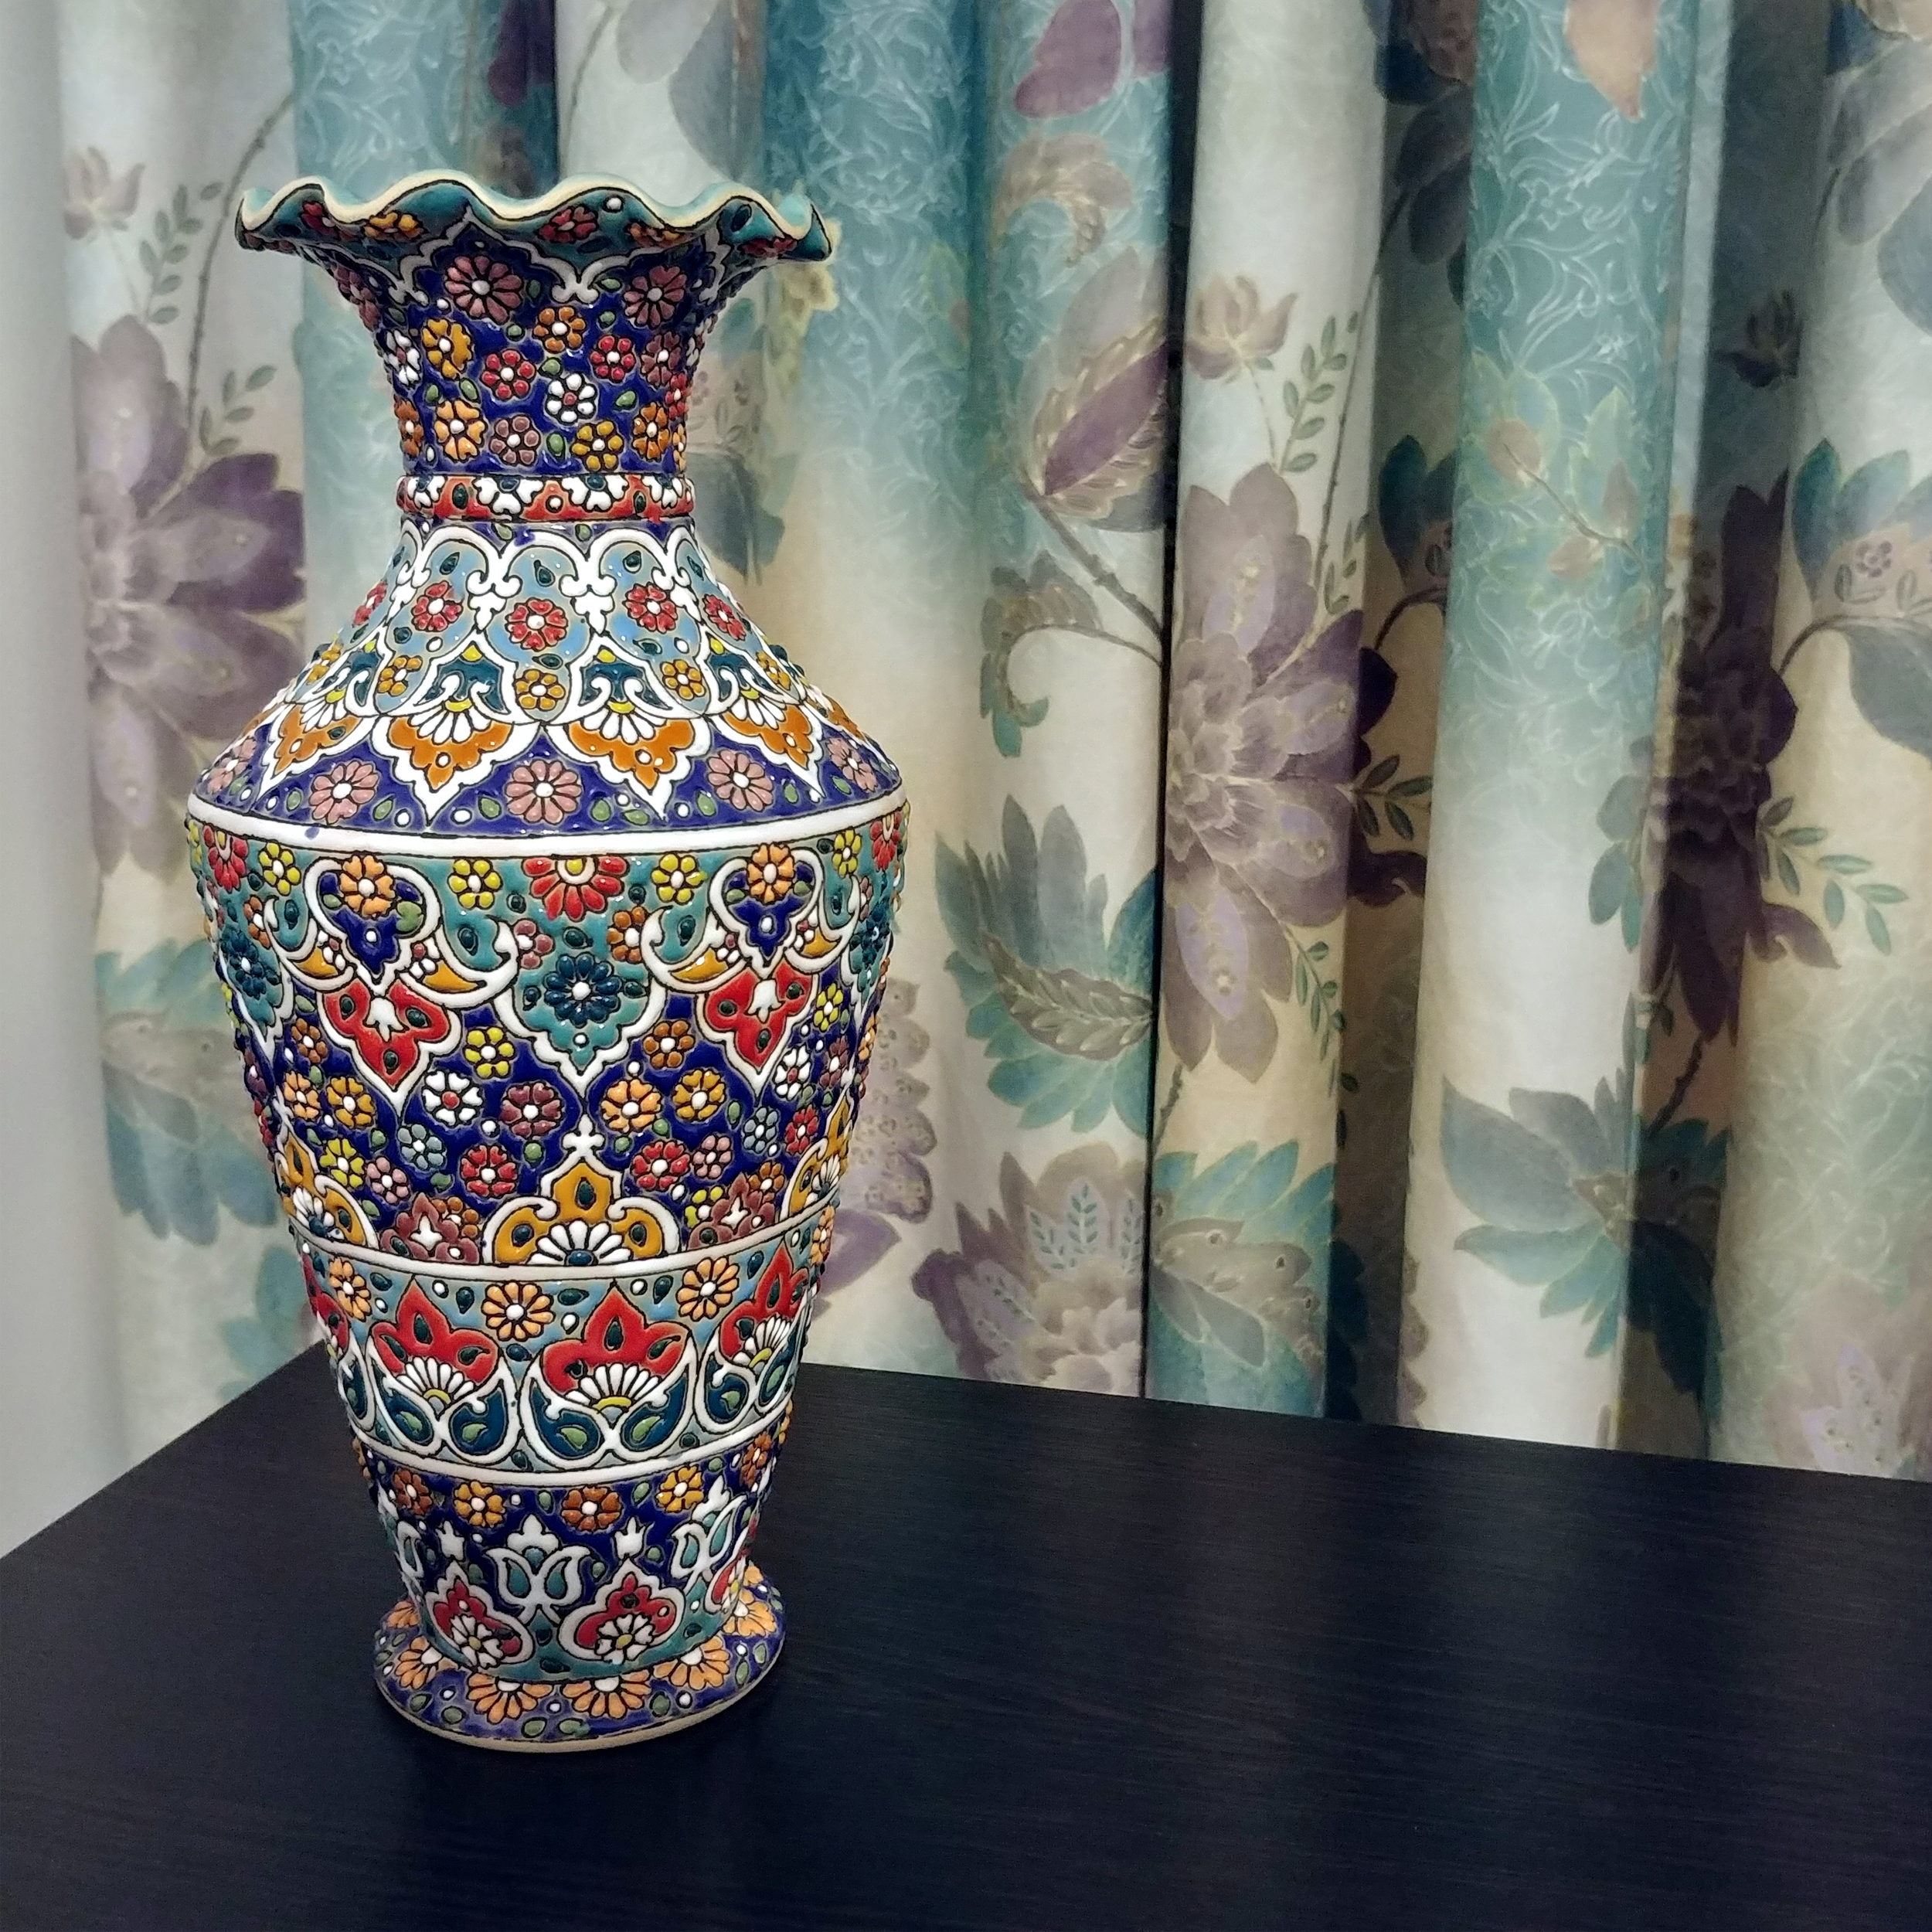 Earthen Enamel vase, code S13 